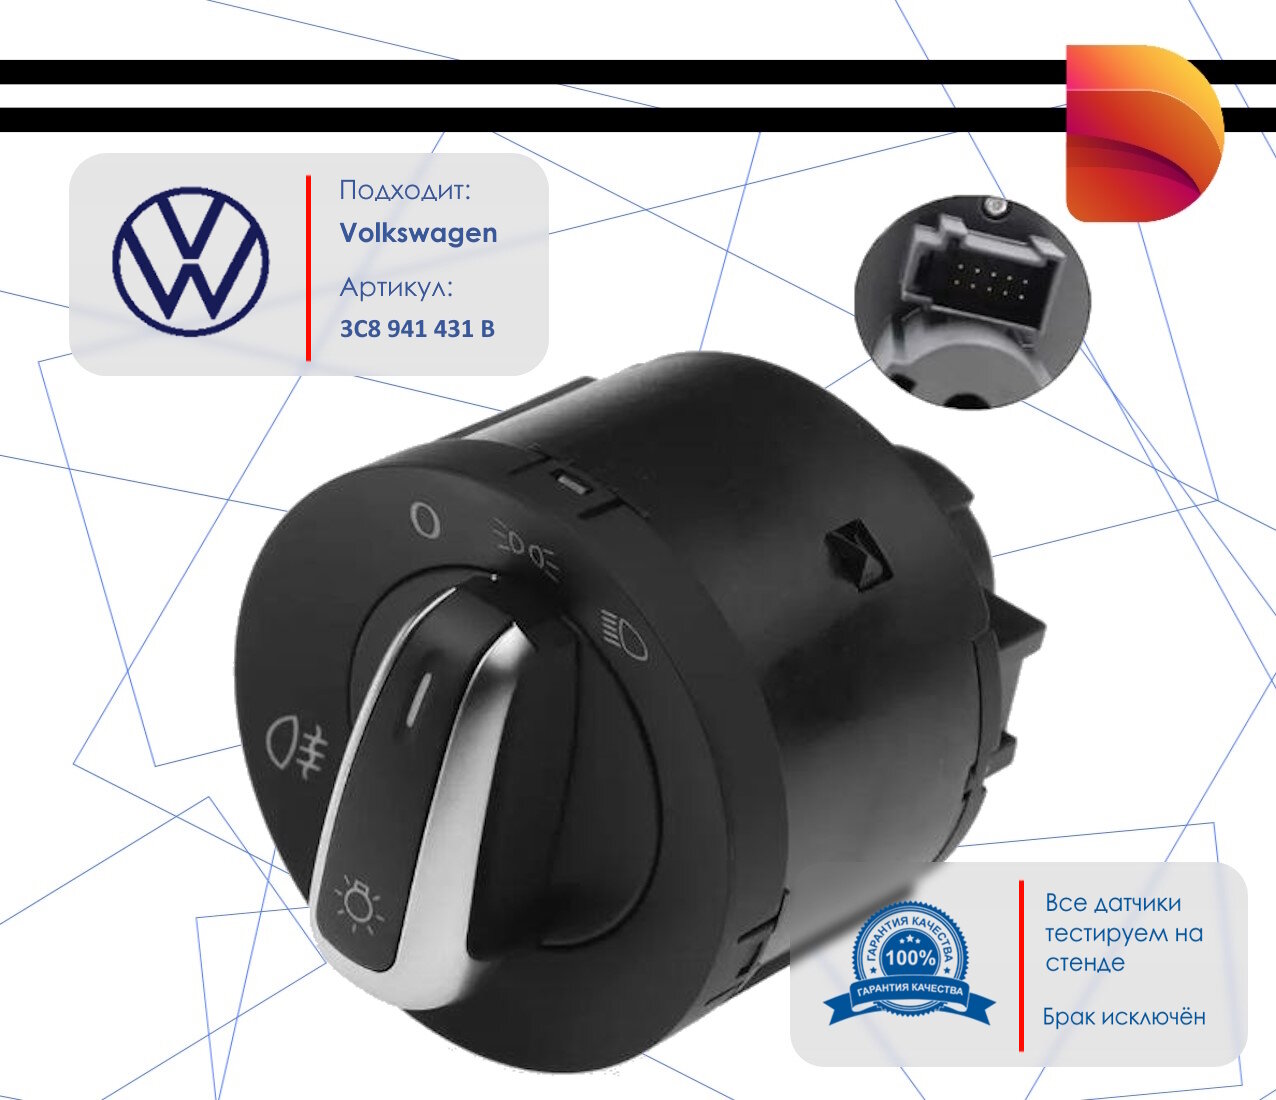 Блок управления светом для Volkswagen (3C8941431B)